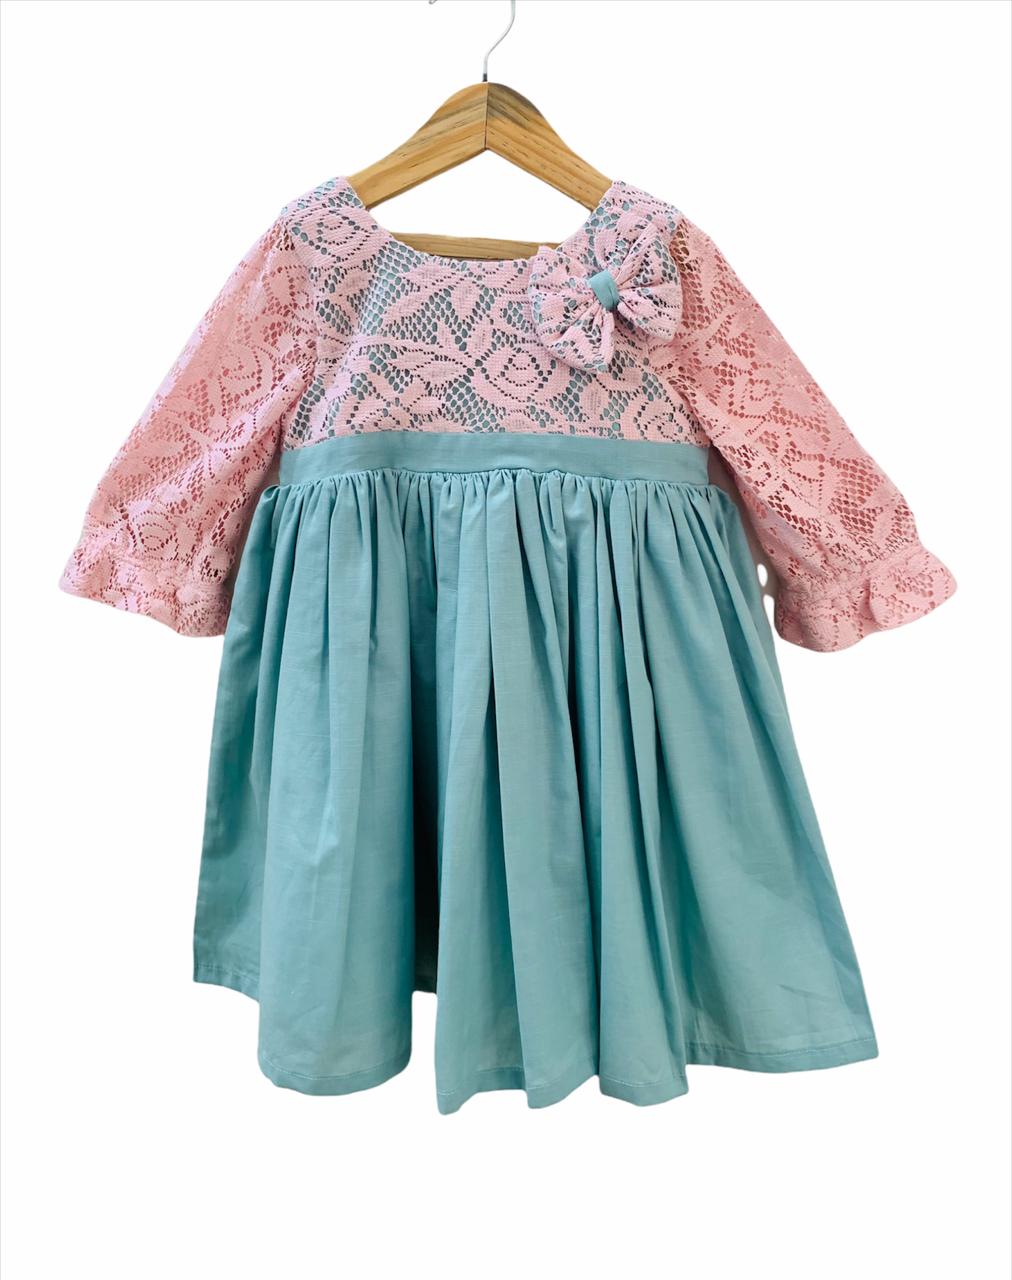 ArthLife Green And Pink Net Dress - Distacart